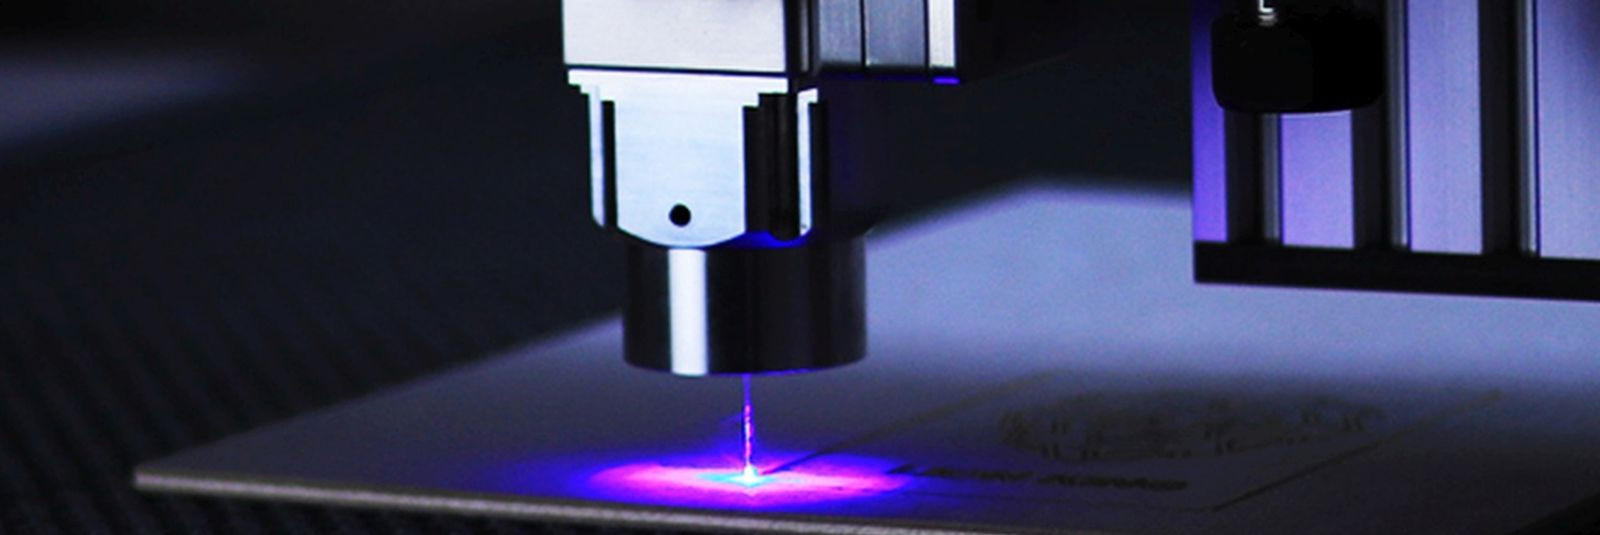 Lasertehnoloogia on tänapäeval üks efektiivsemaid viise lehtmaterjali ...